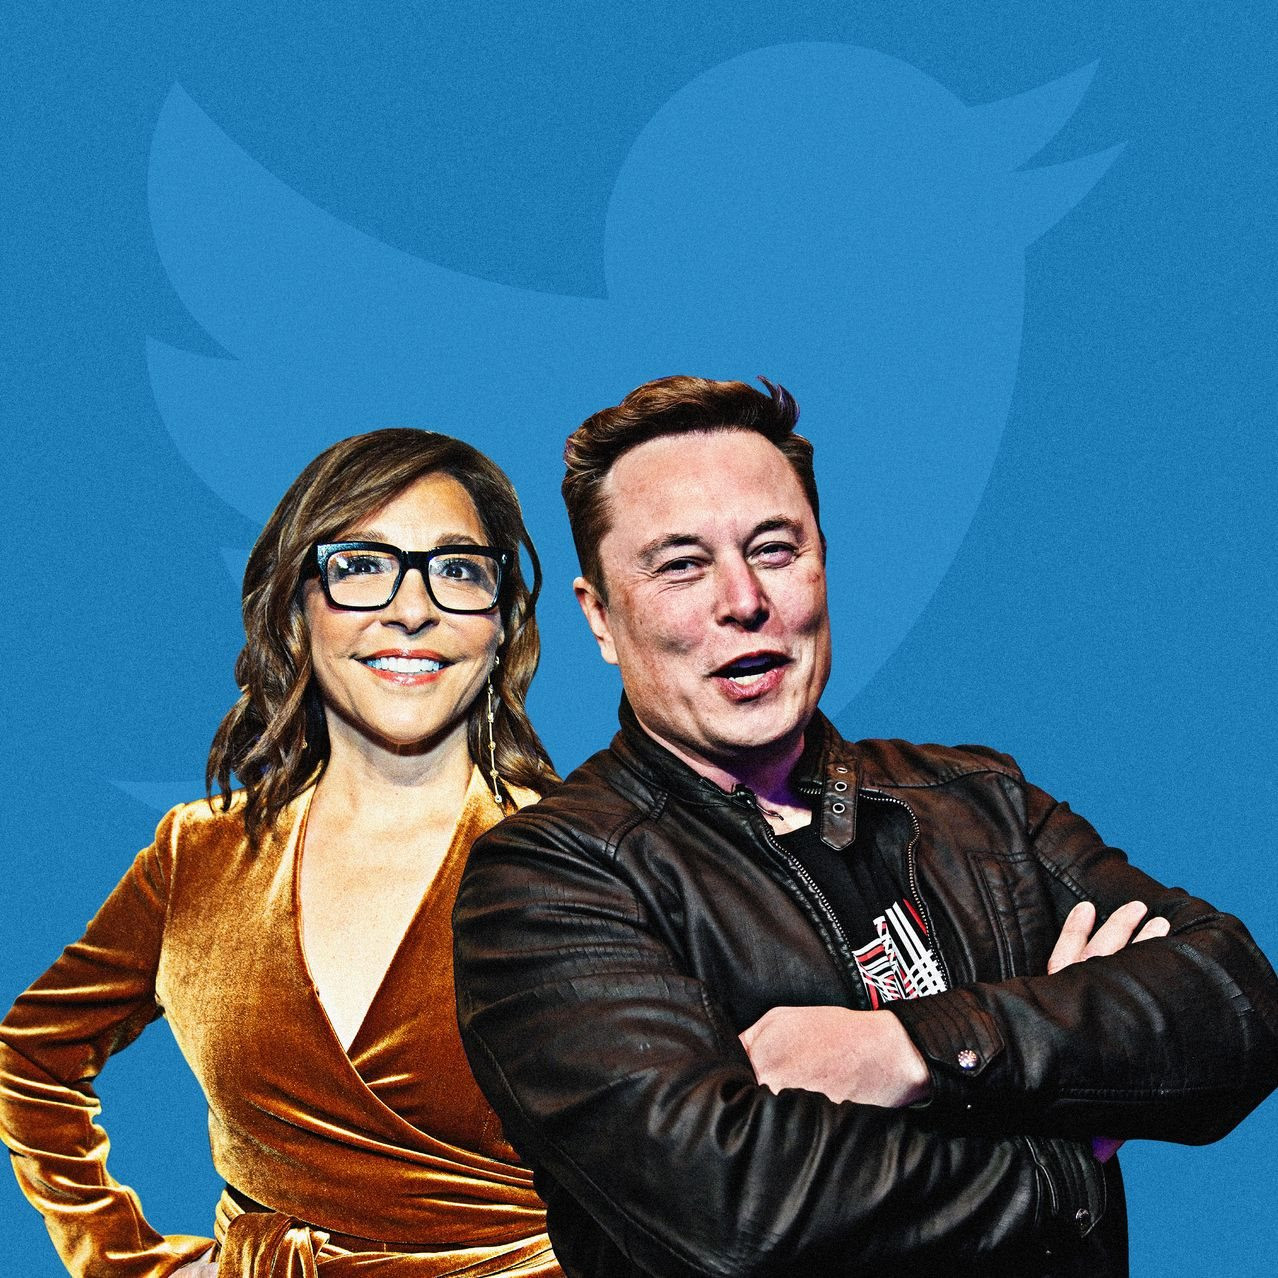 'Cặp đôi' Elon Musk - Linda Yaccarino liệu có làm nên chuyện tại Twitter?